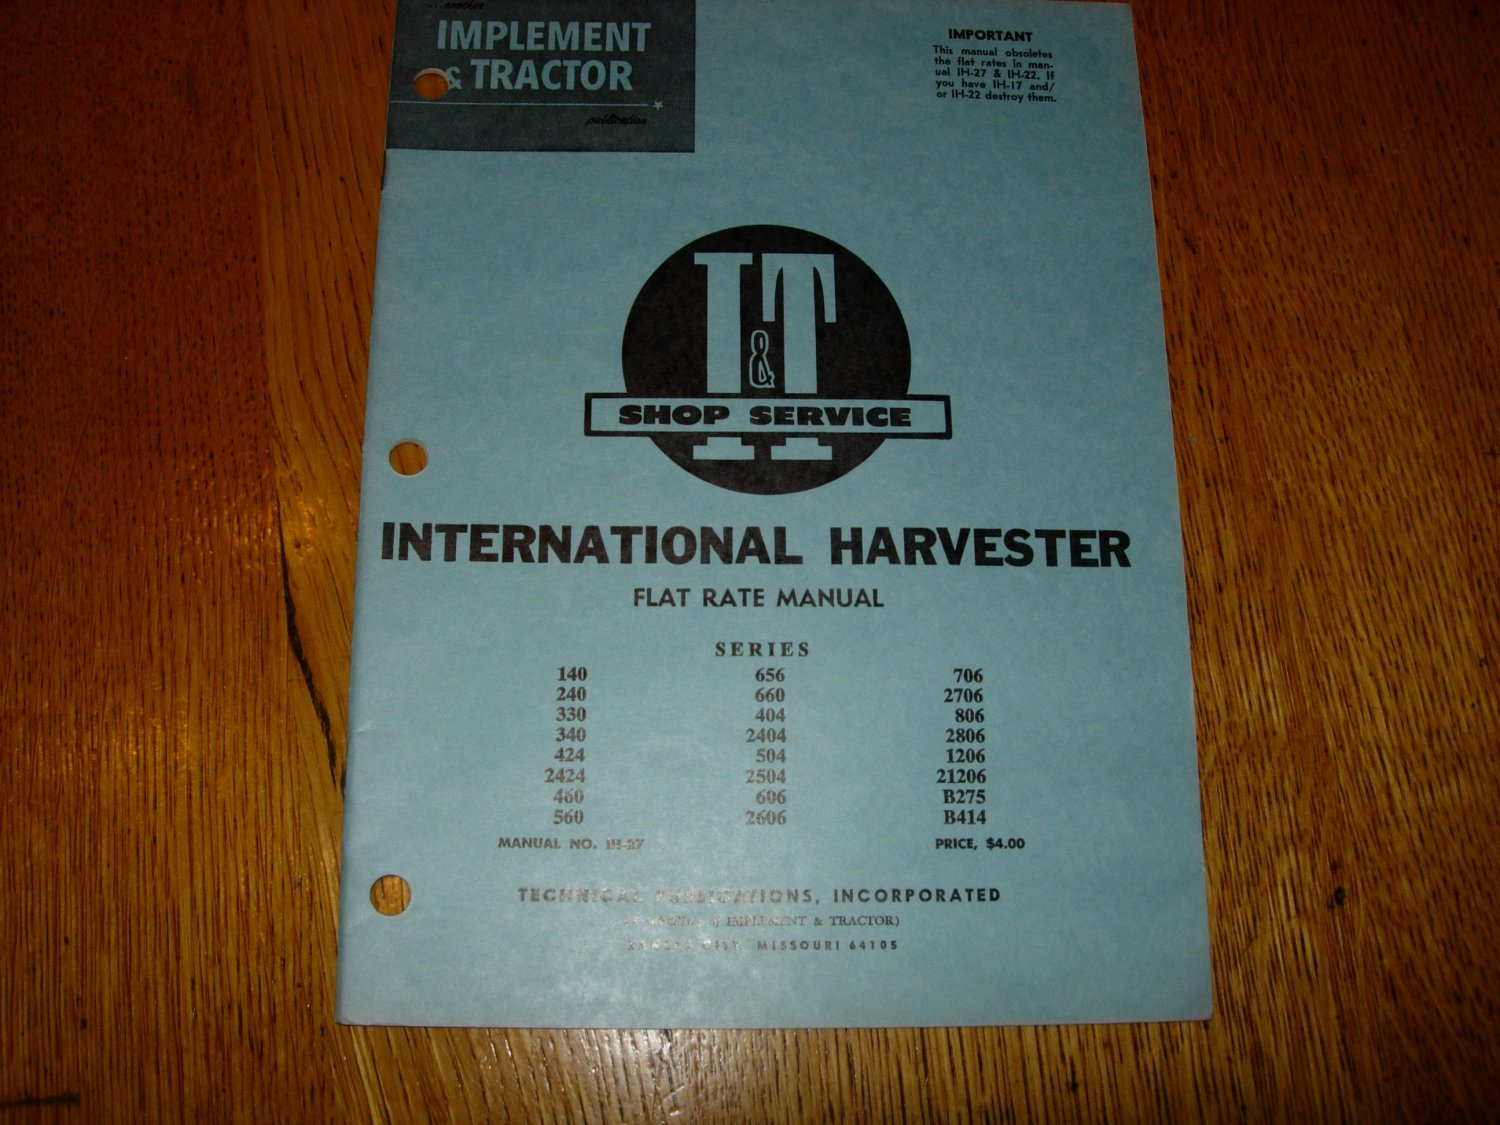 I & T Shop Service International Harvester Flat Rate Manual IH-27